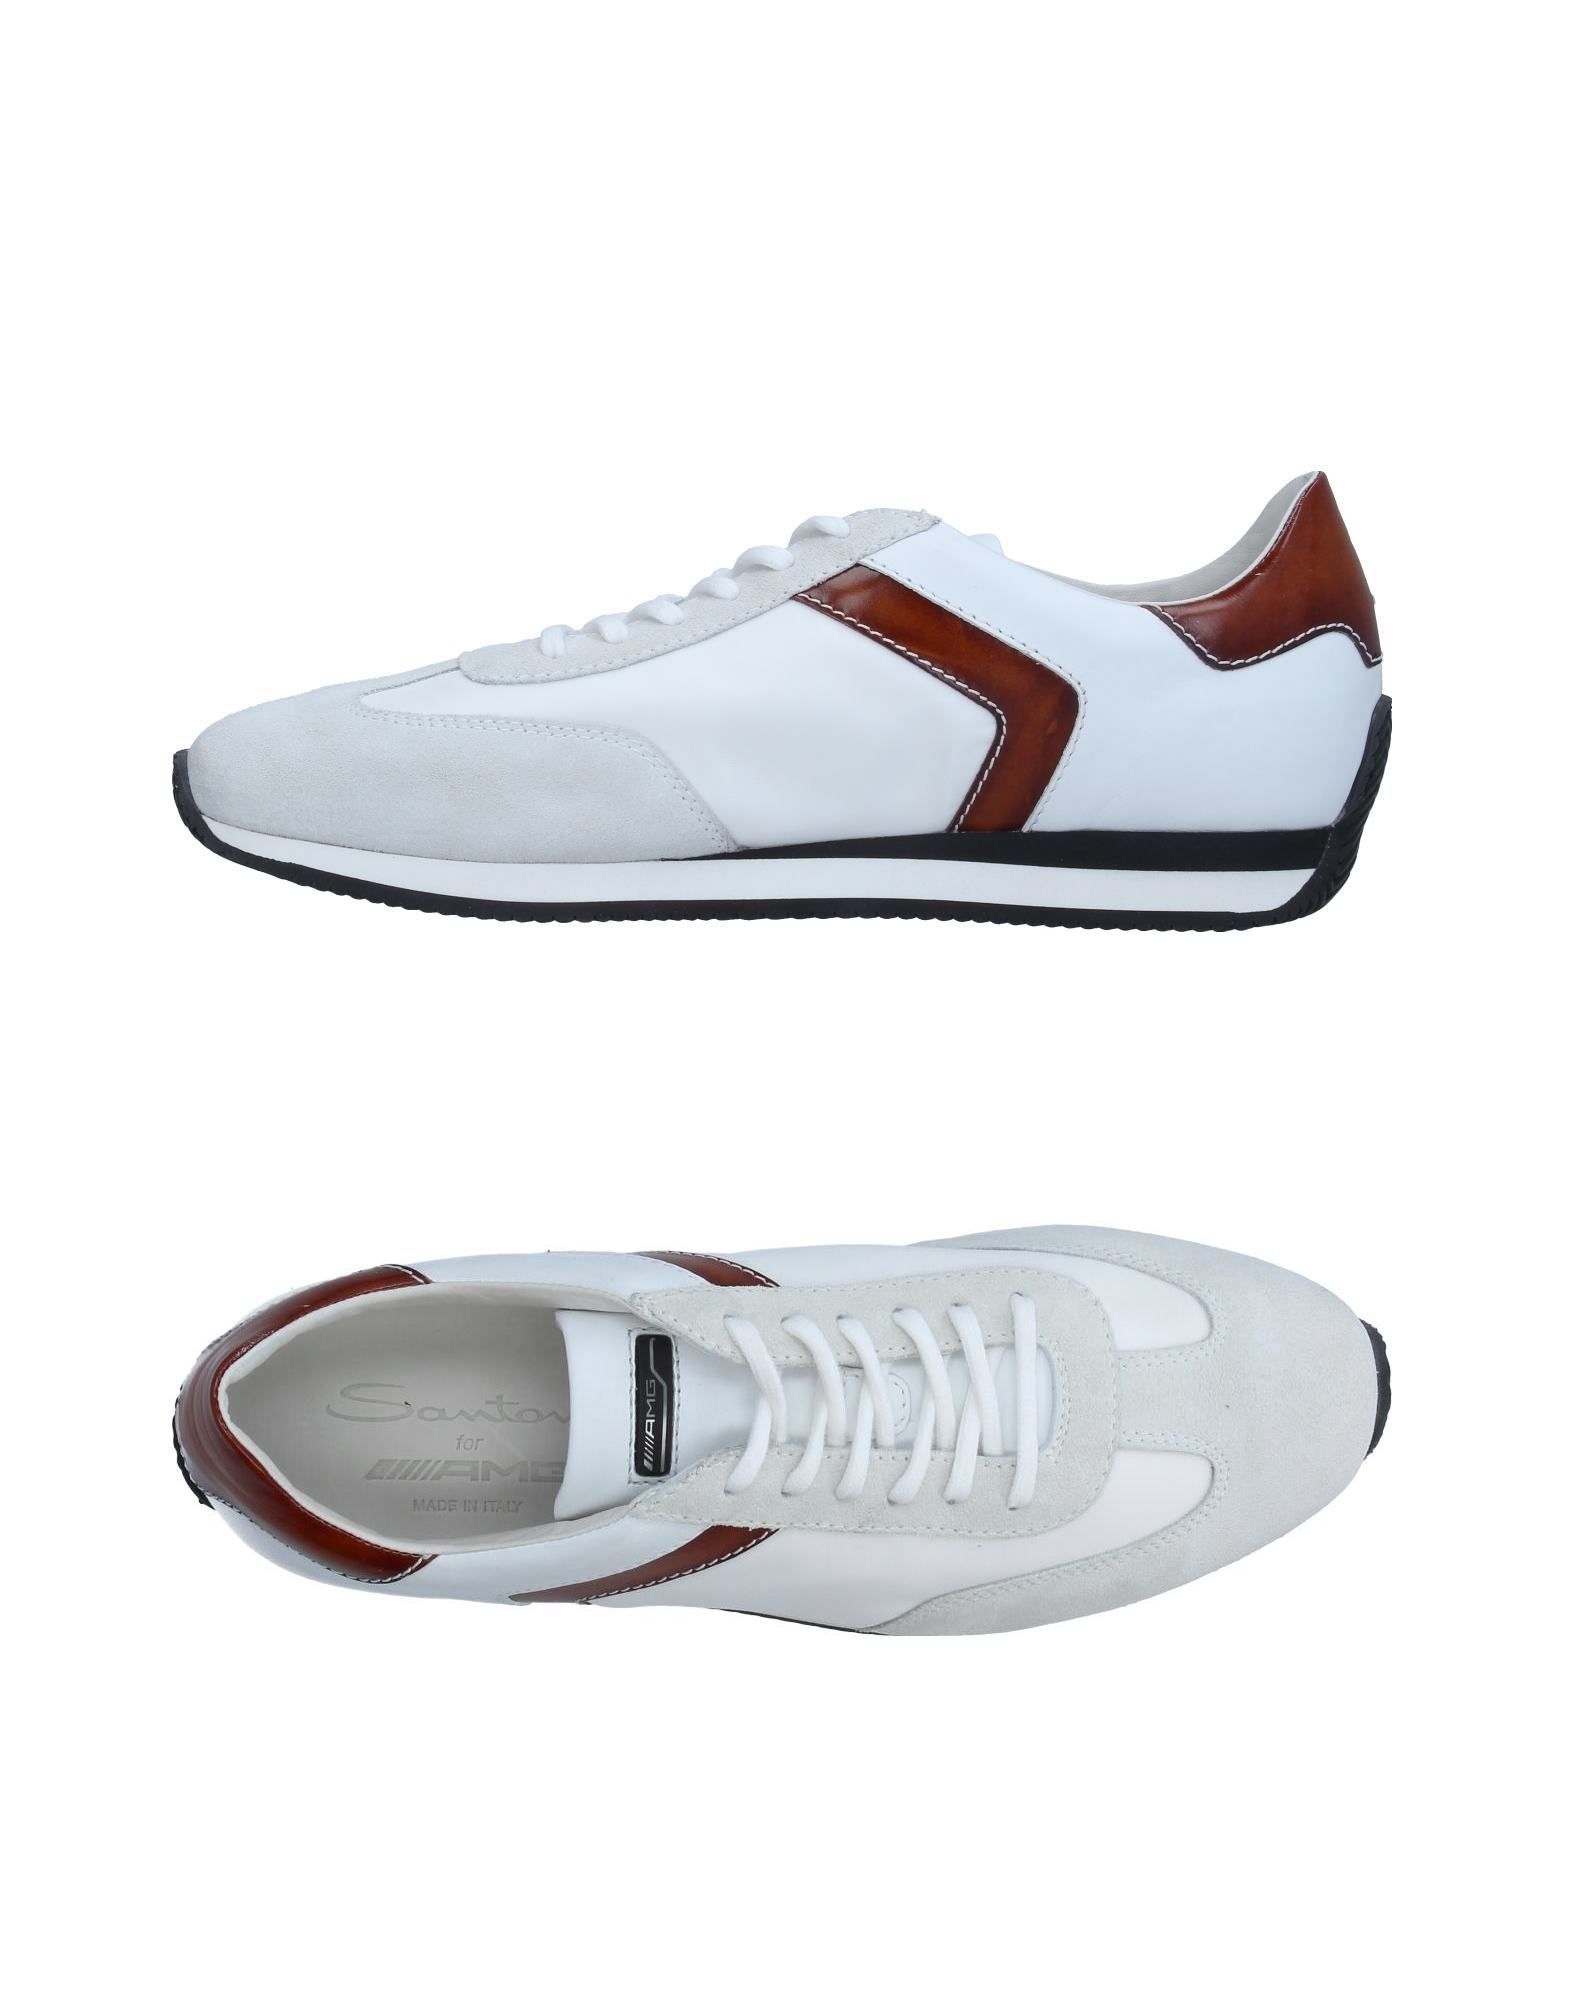 SANTONI Low-tops & sneakers - Item 11325427